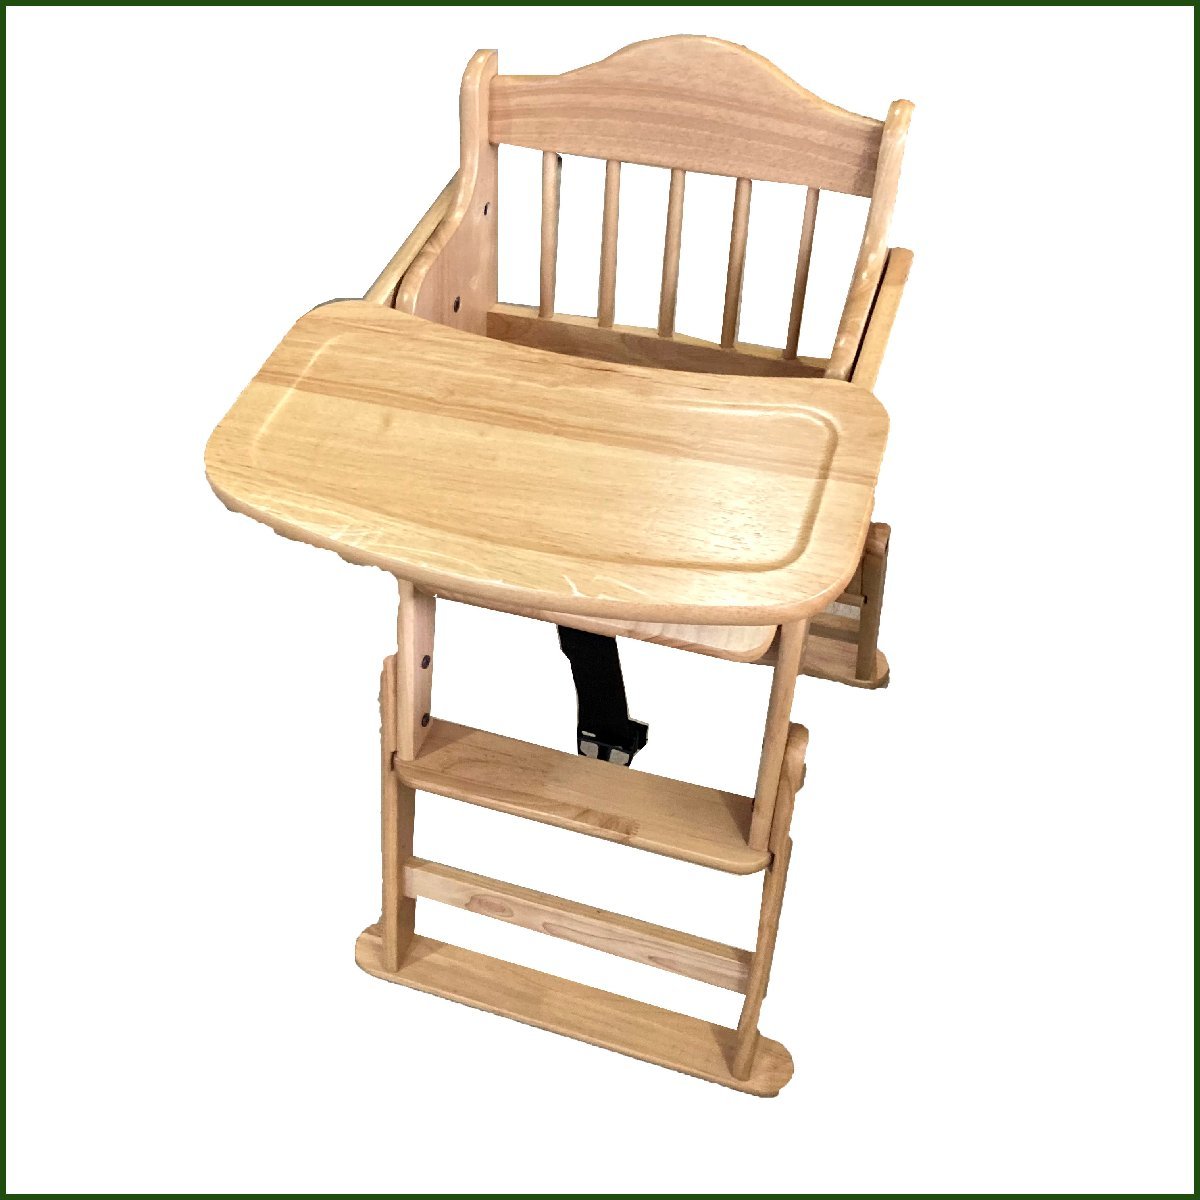  б/у *. рисовое поле деревообработка место * детский стул стул натуральный высота регулировка возможность натуральное дерево стол есть 